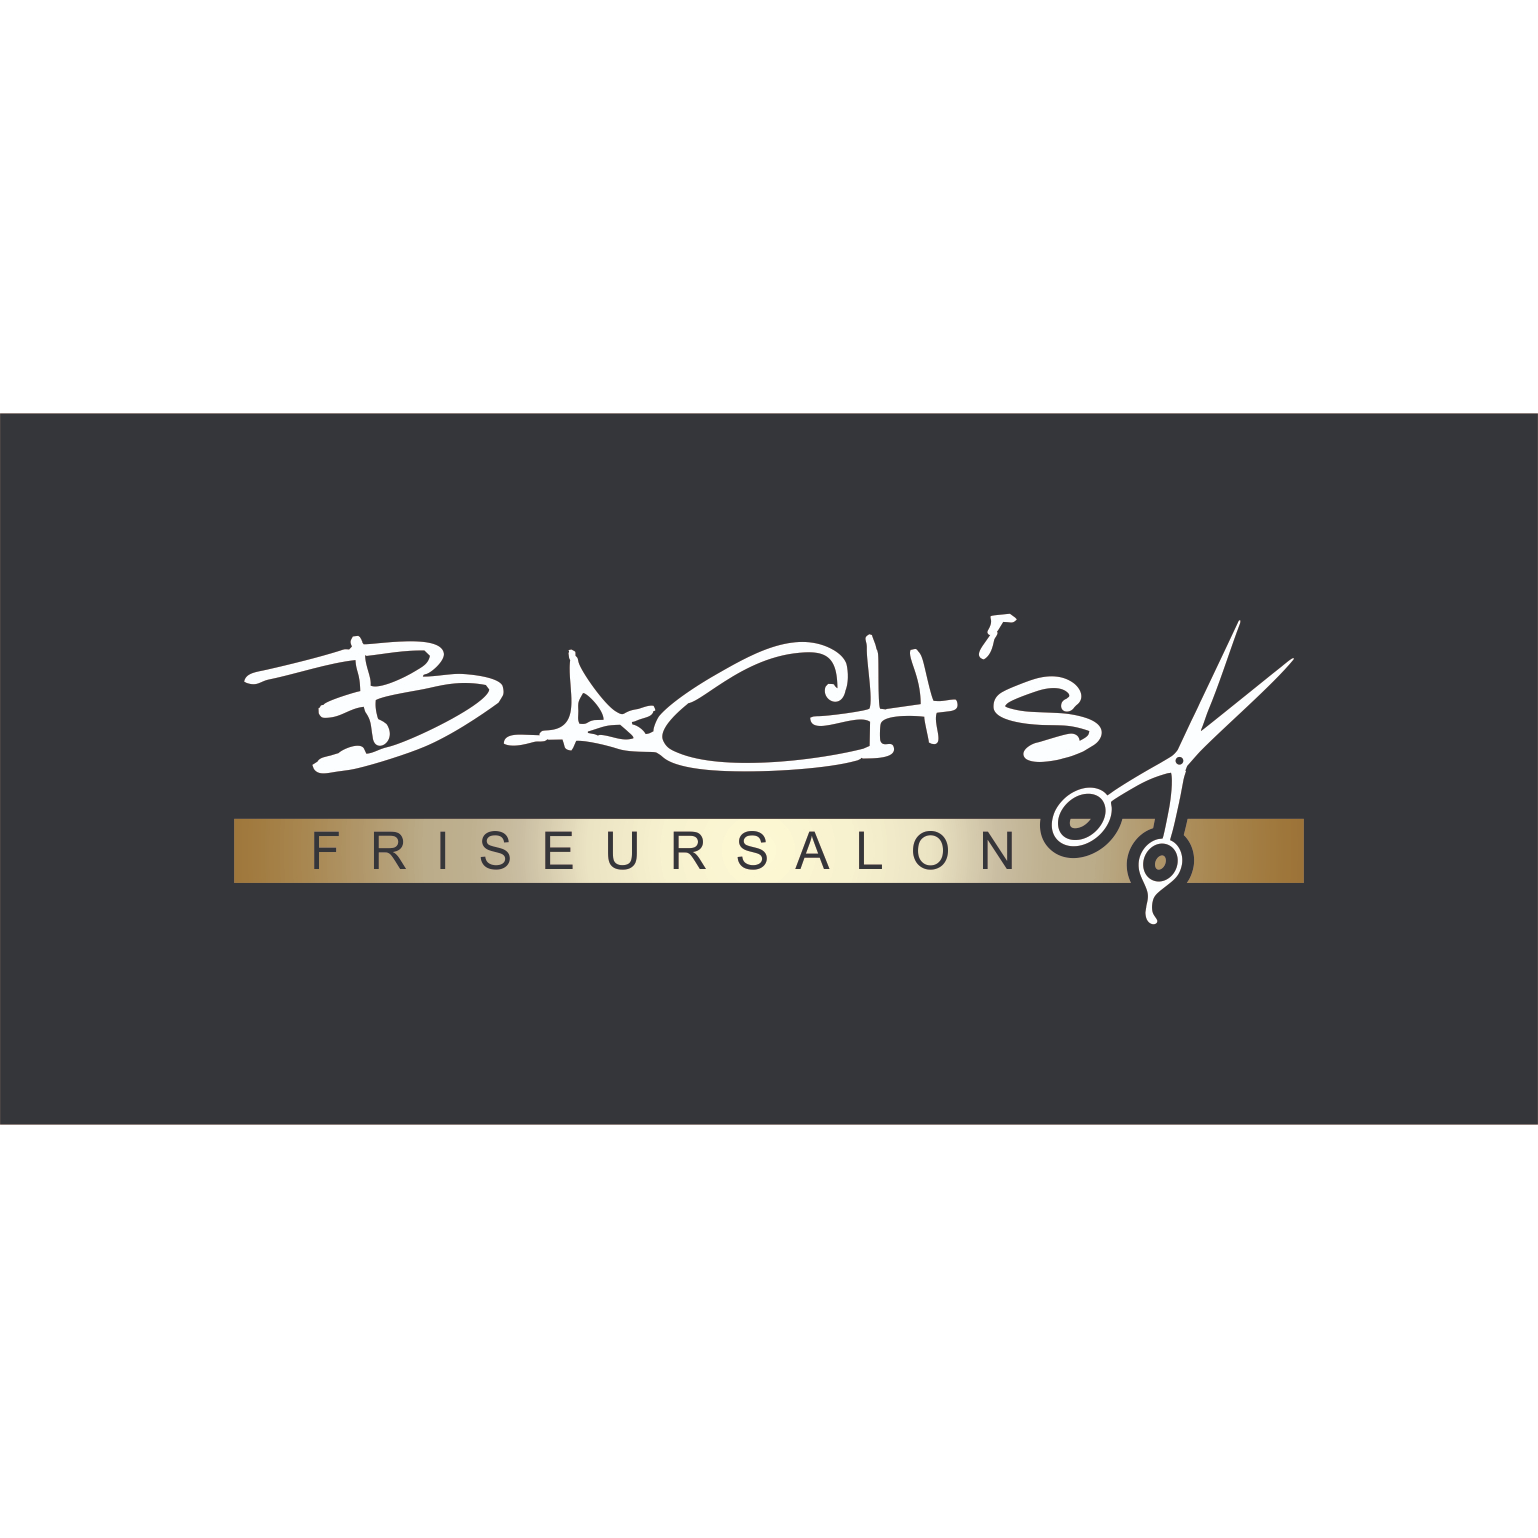 BACH's Friseursalon in Leipzig - Logo